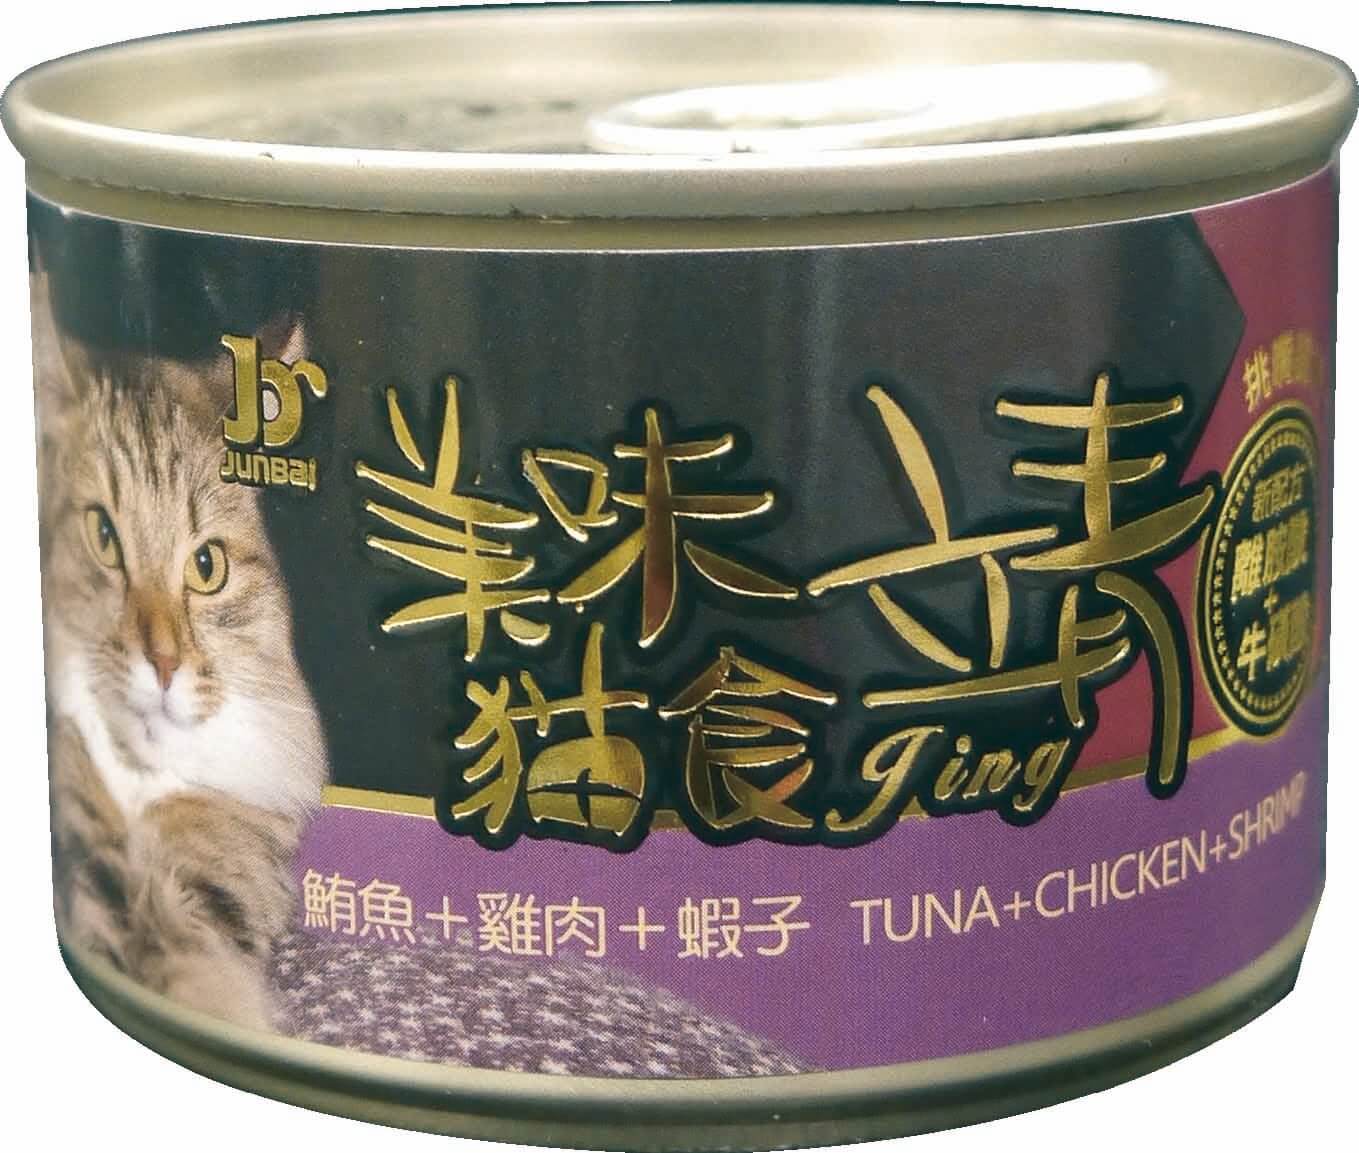 靖特級貓罐160G-鮪魚+雞肉+蝦子
Jing cat can-tuna+chicken+shrimp